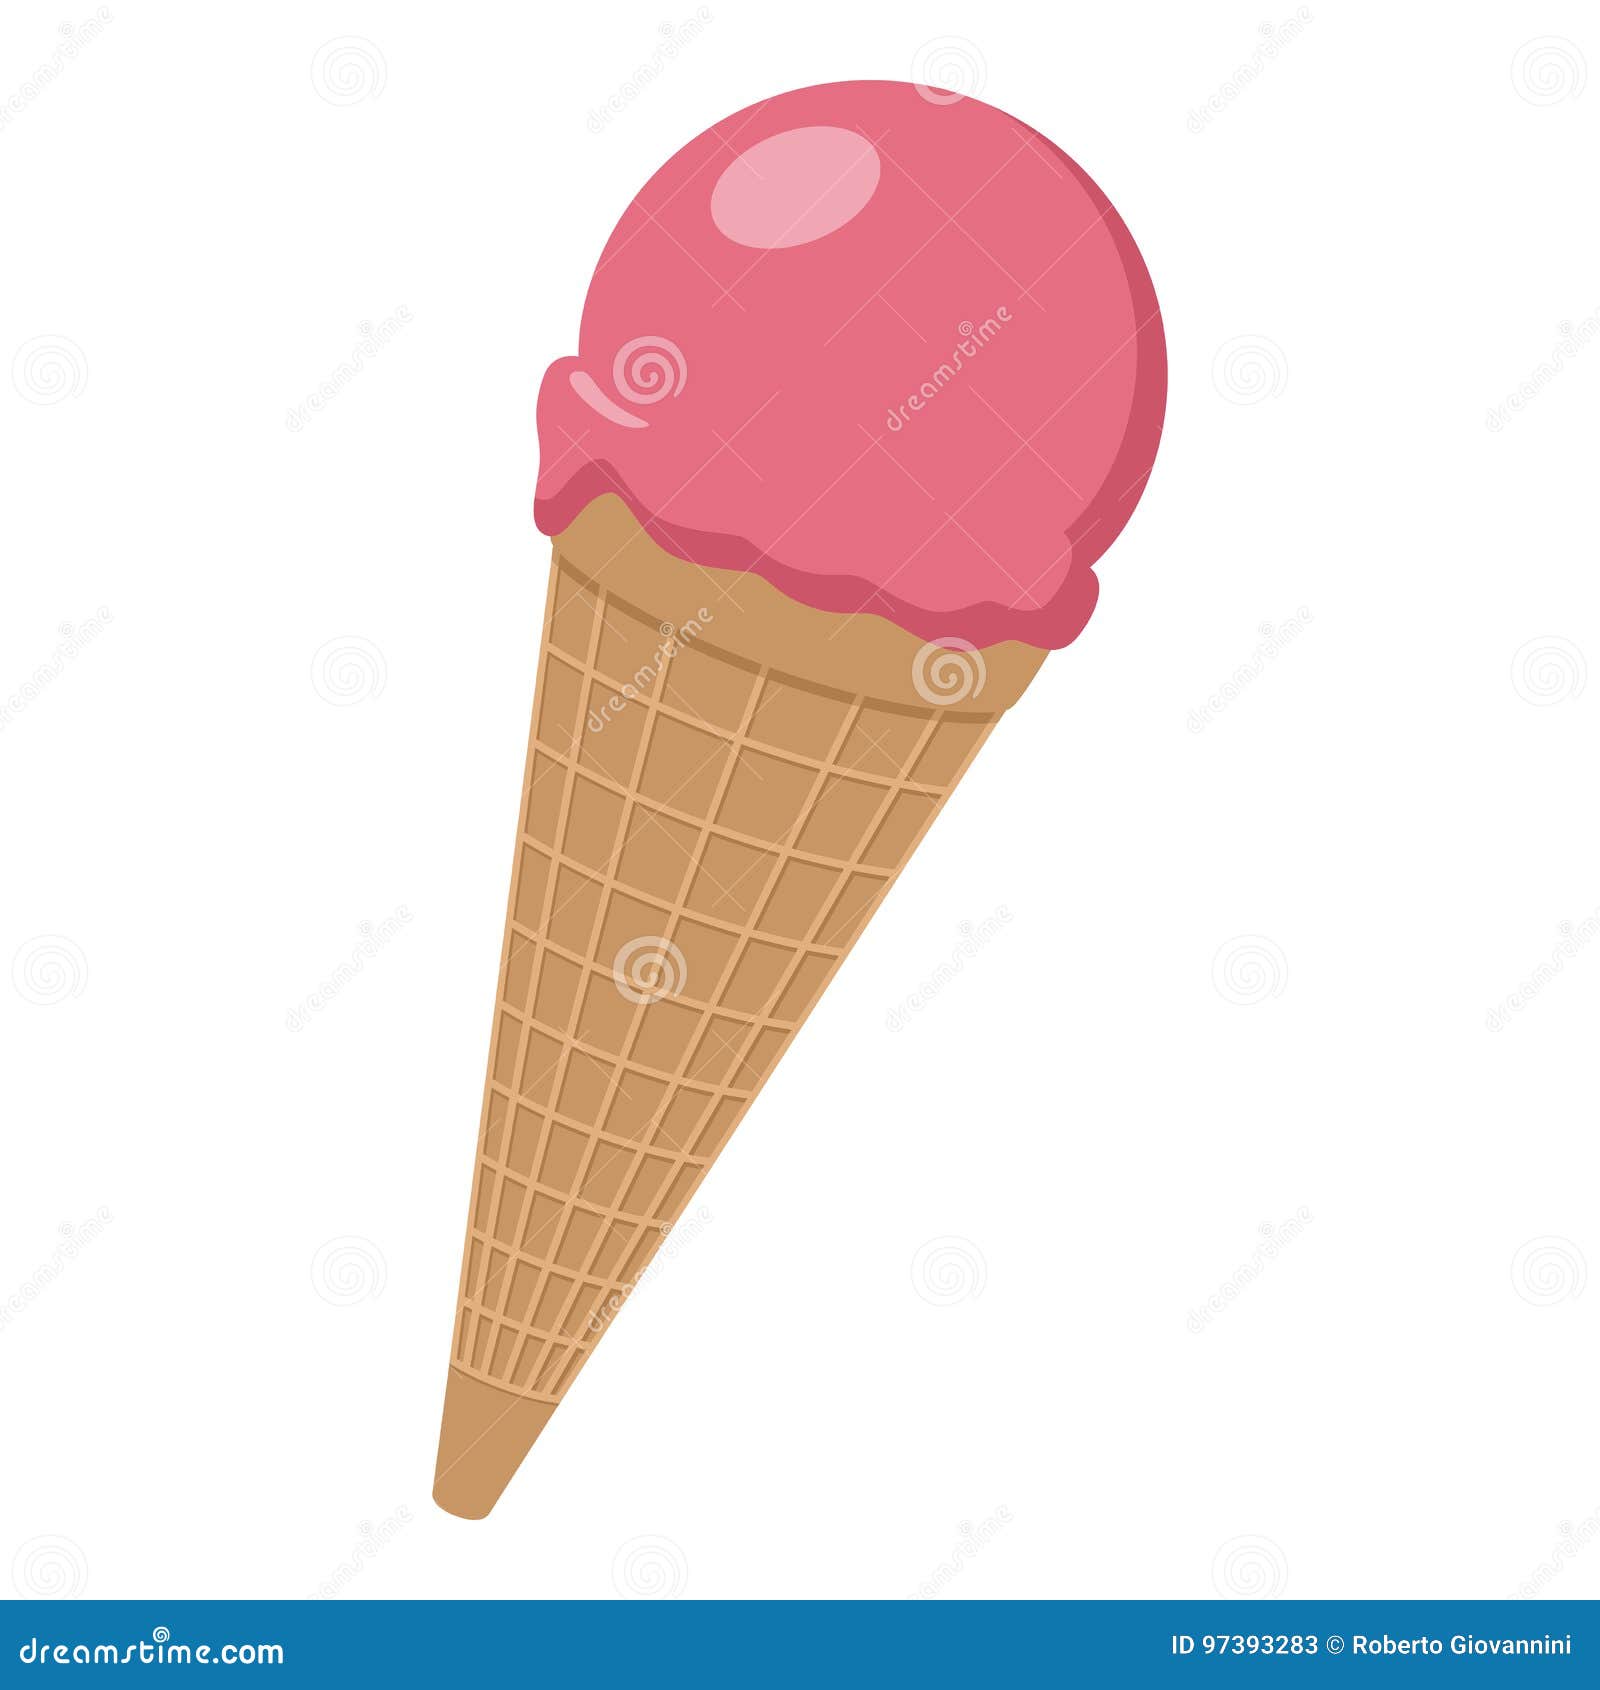 strawberry ice cream cone flat icon